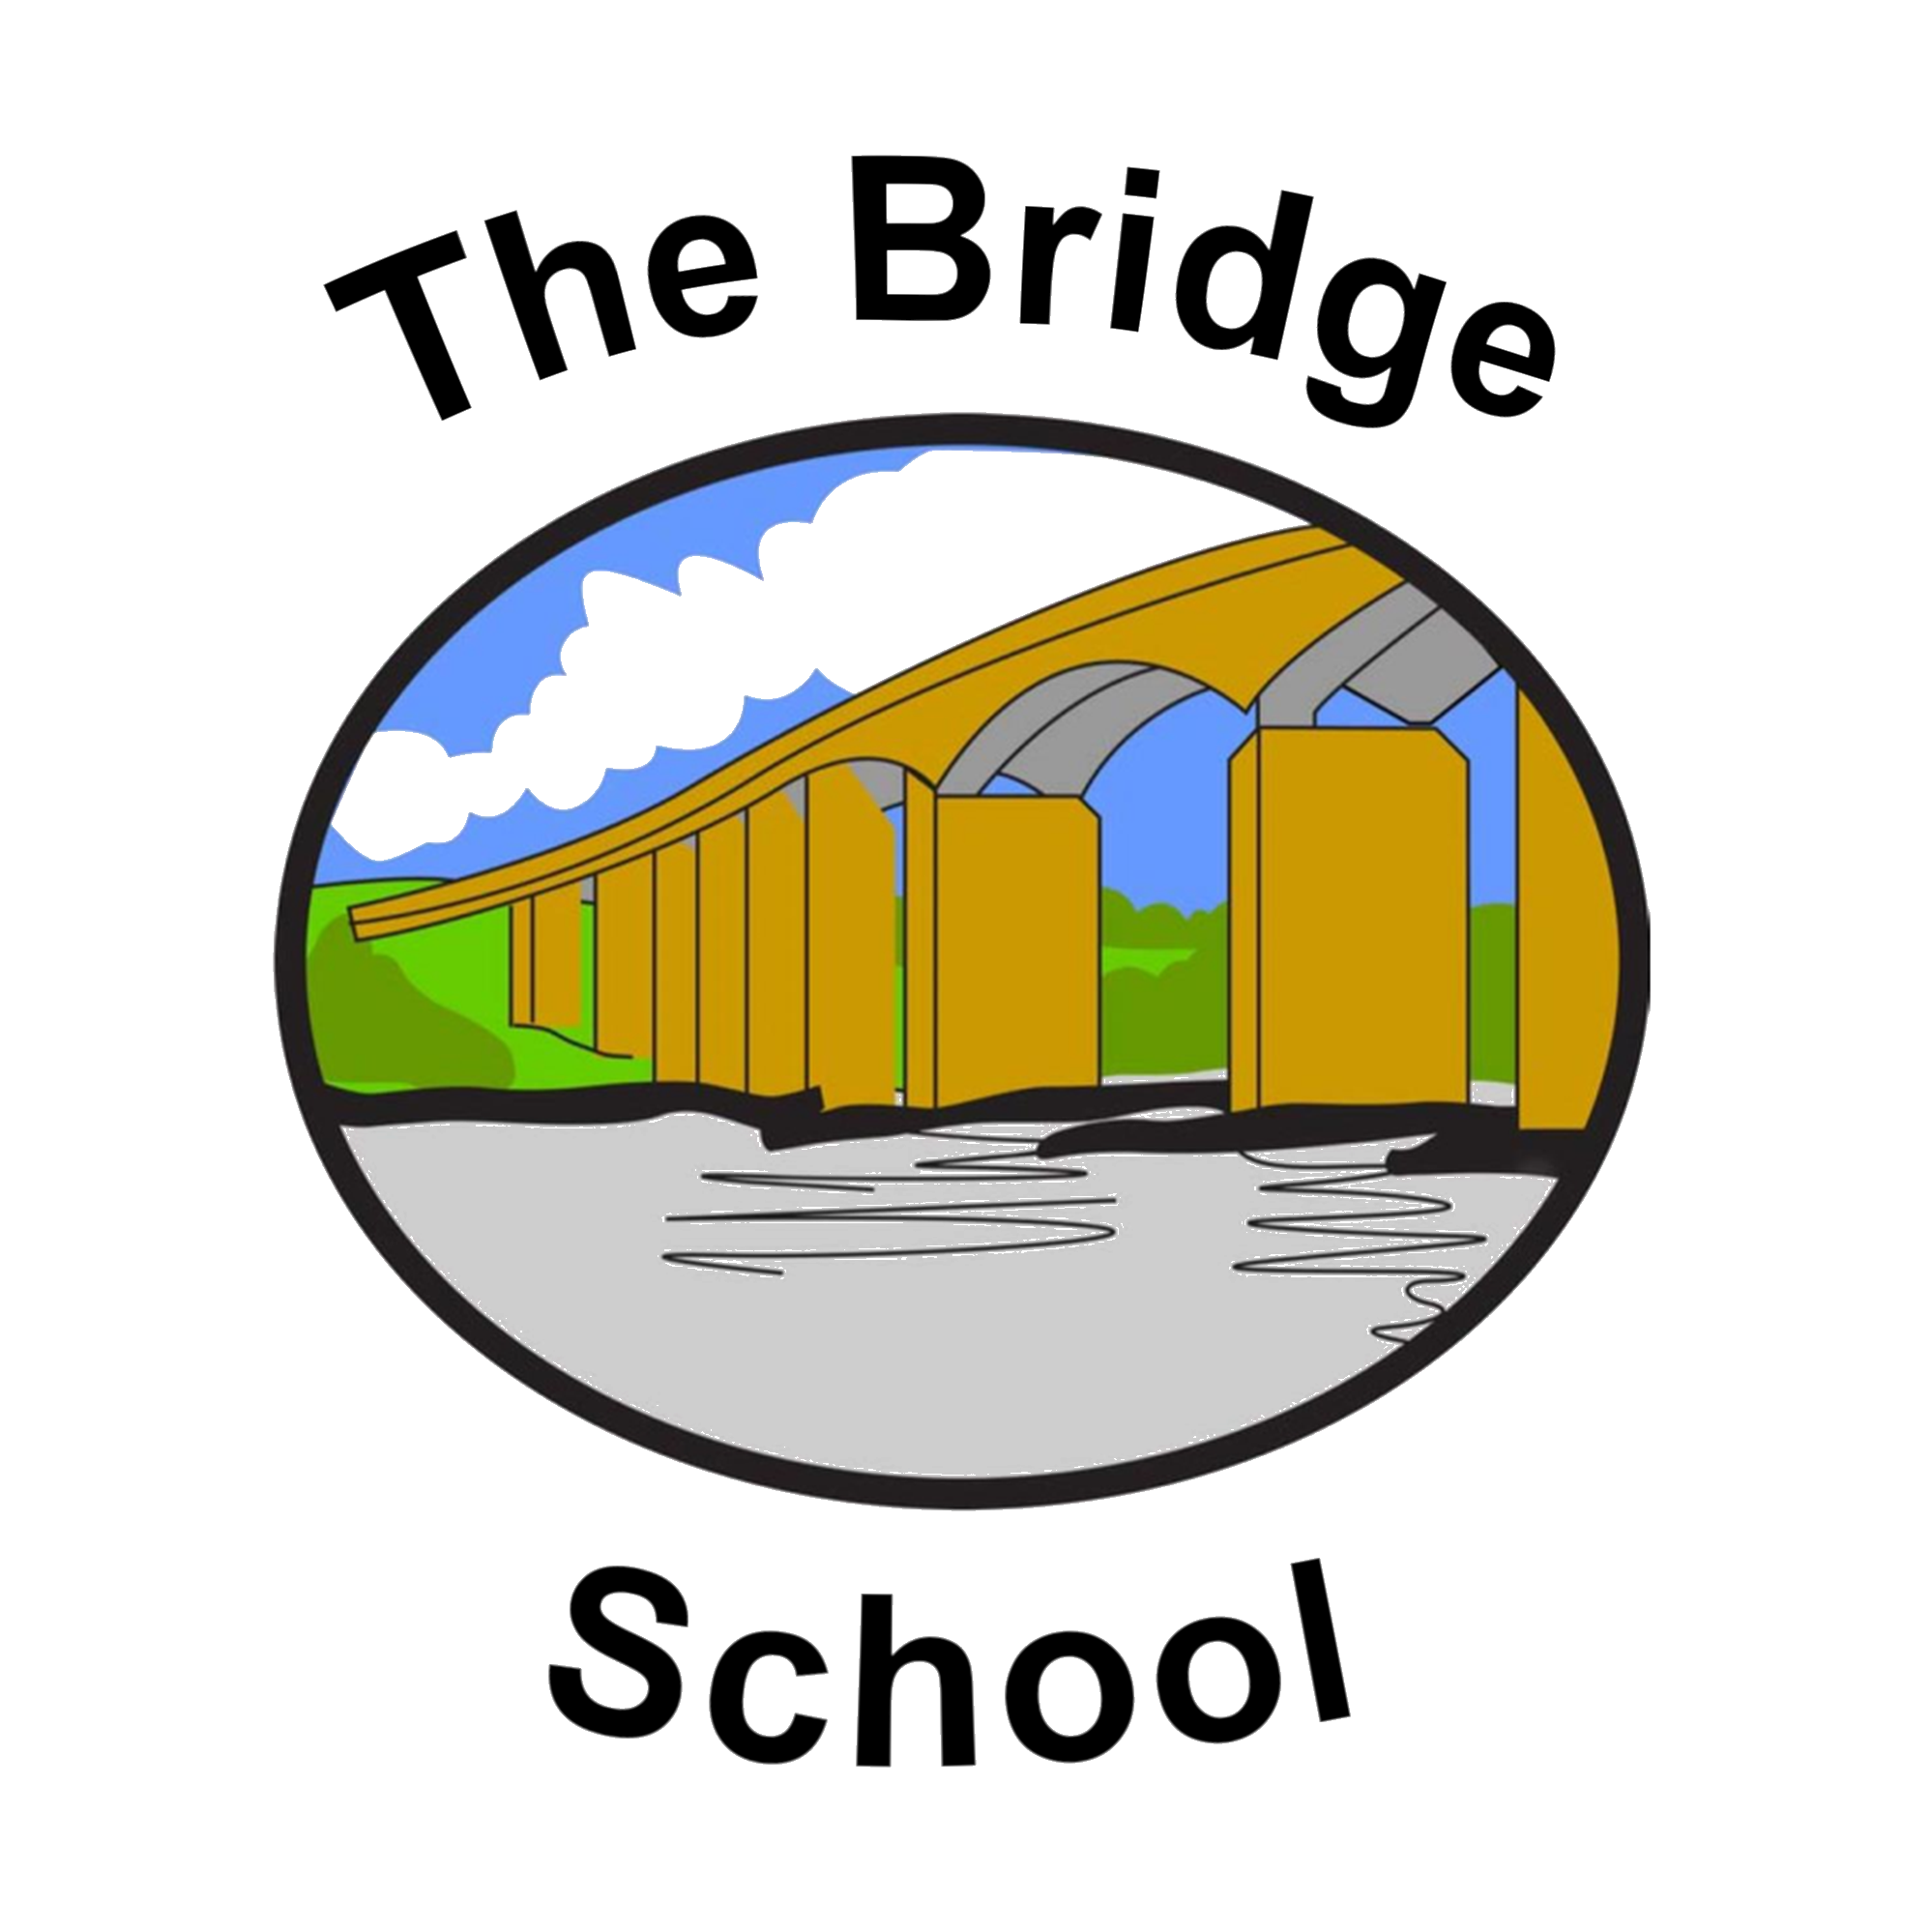 The Bridge School